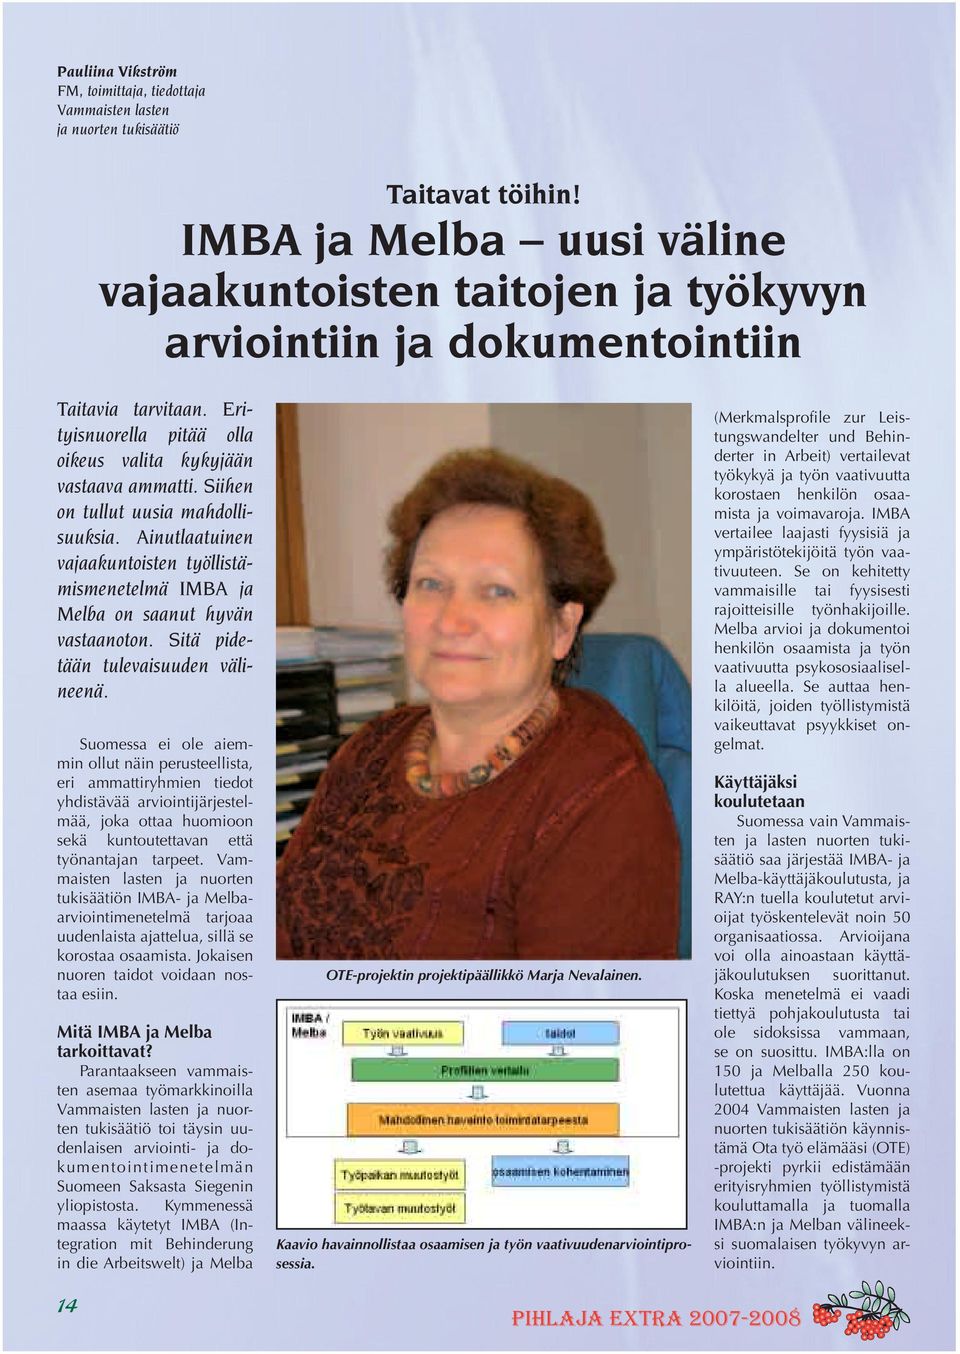 Siihen on tullut uusia mahdollisuuksia. Ainutlaatuinen vajaakuntoisten työllistämismenetelmä IMBA ja Melba on saanut hyvän vastaanoton. Sitä pidetään tulevaisuuden välineenä.